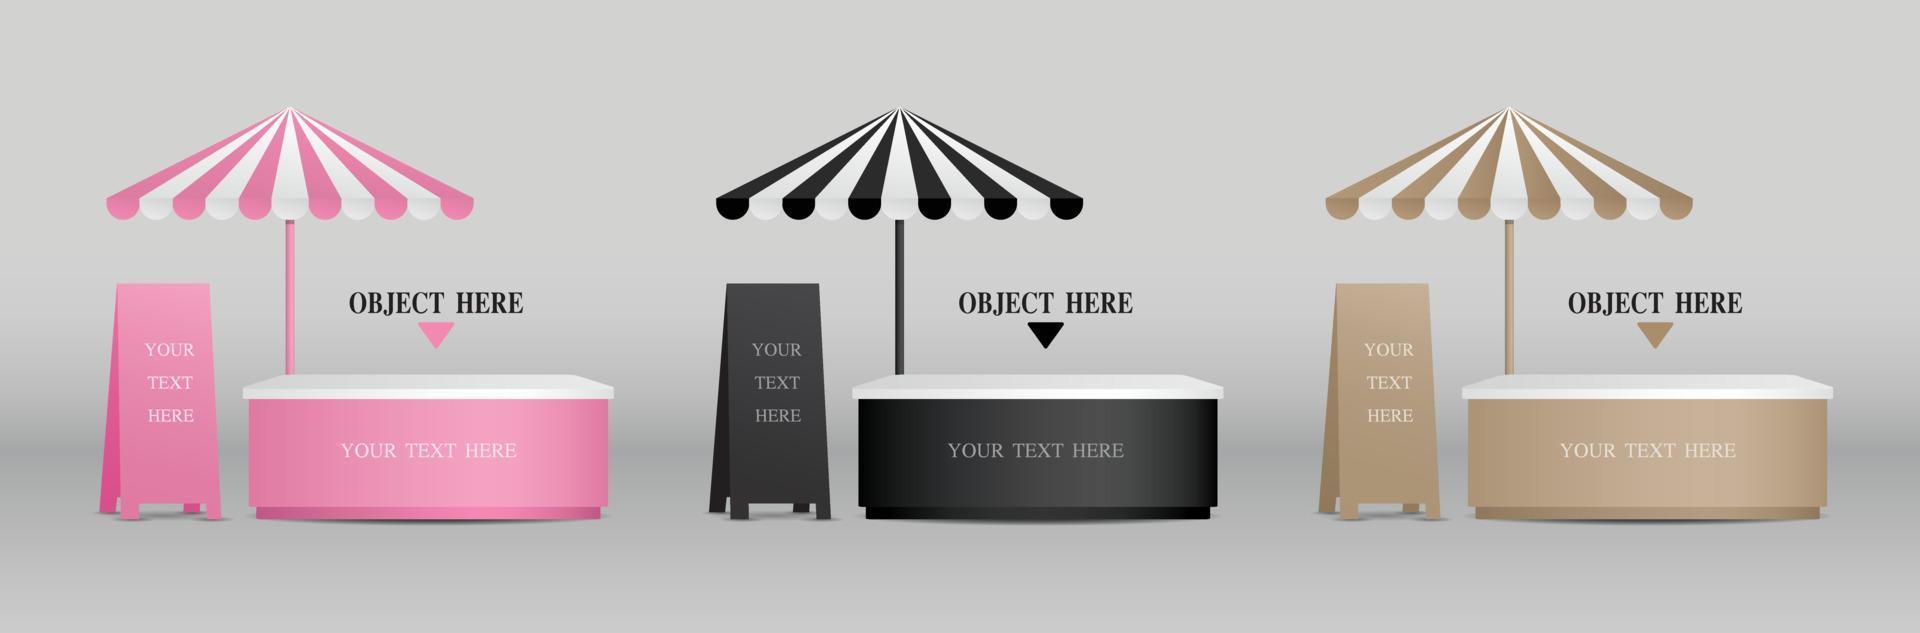 leuke mobiele standverzameling met parasol en uithangbord 3d illustratievector om uw object te plaatsen vector